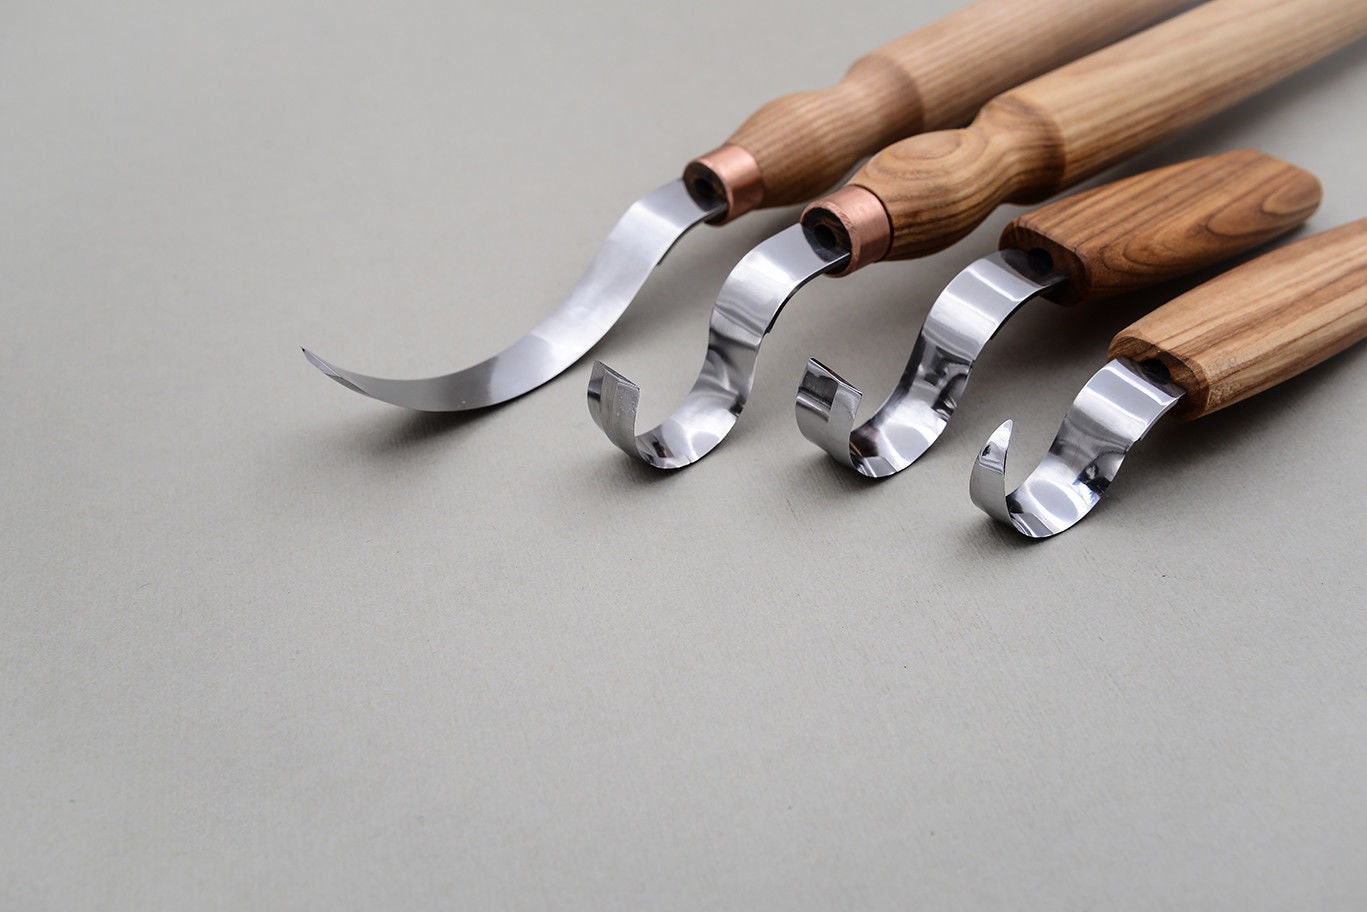 Garten & Heimwerken Baumarkt Werkzeuge Handwerkzeuge Schnitzmesser Hand Carving Work Tool Meißel Carving Löffel, 